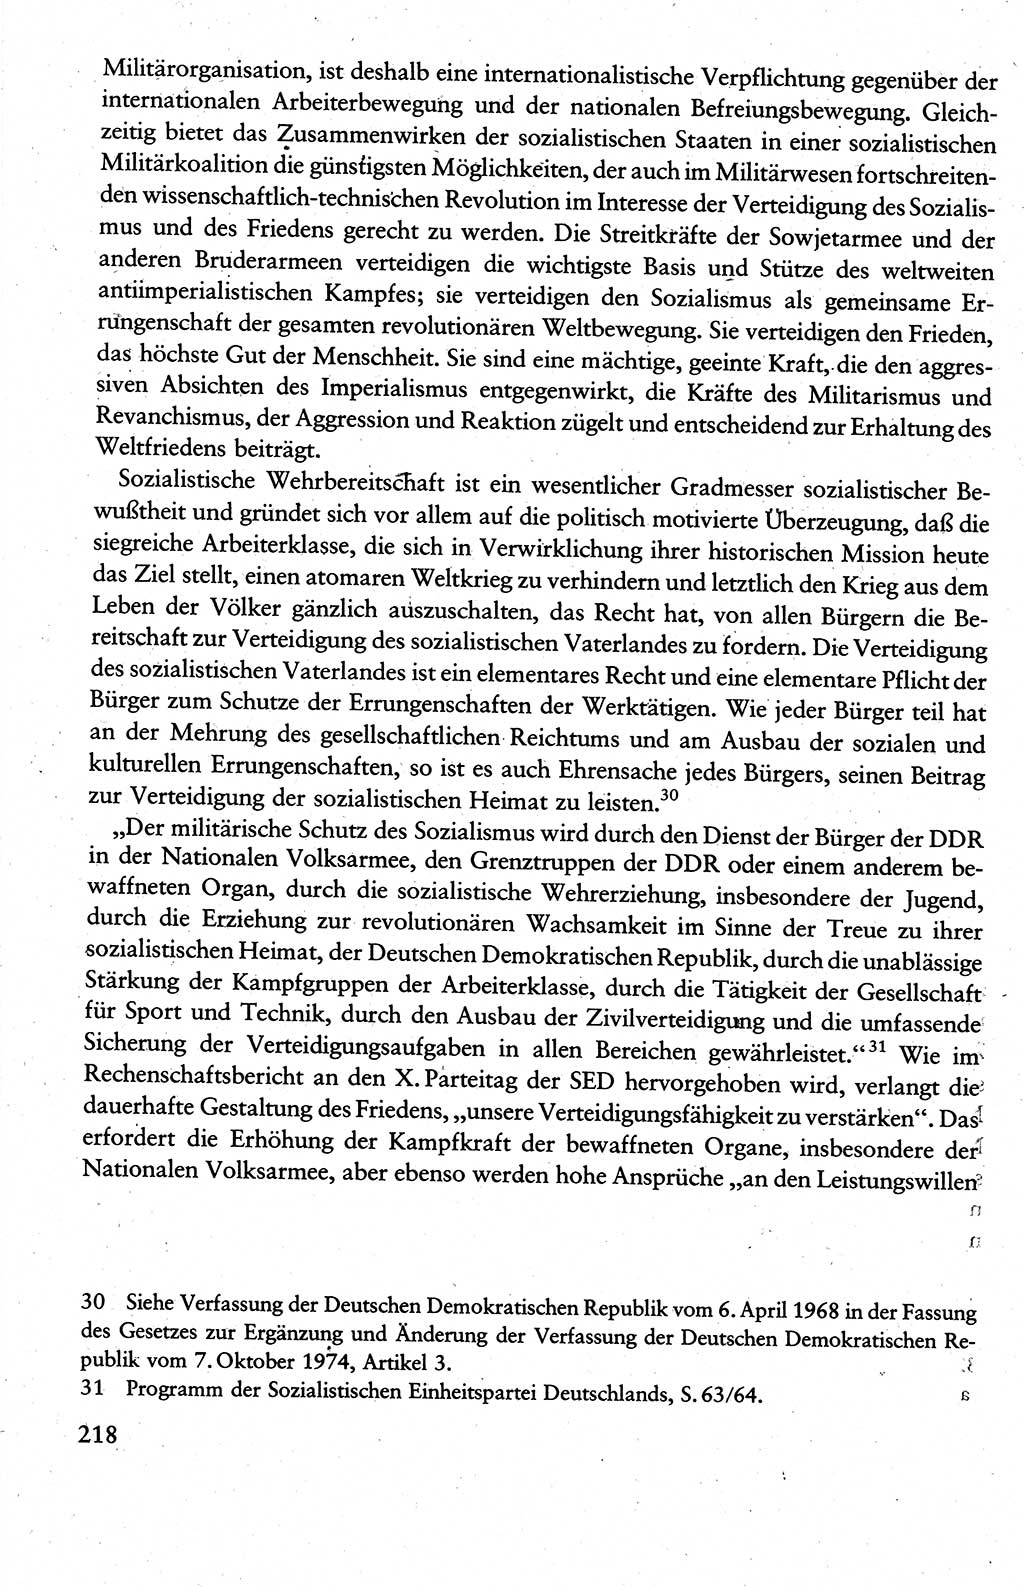 Wissenschaftlicher Kommunismus [Deutsche Demokratische Republik (DDR)], Lehrbuch für das marxistisch-leninistische Grundlagenstudium 1983, Seite 218 (Wiss. Komm. DDR Lb. 1983, S. 218)